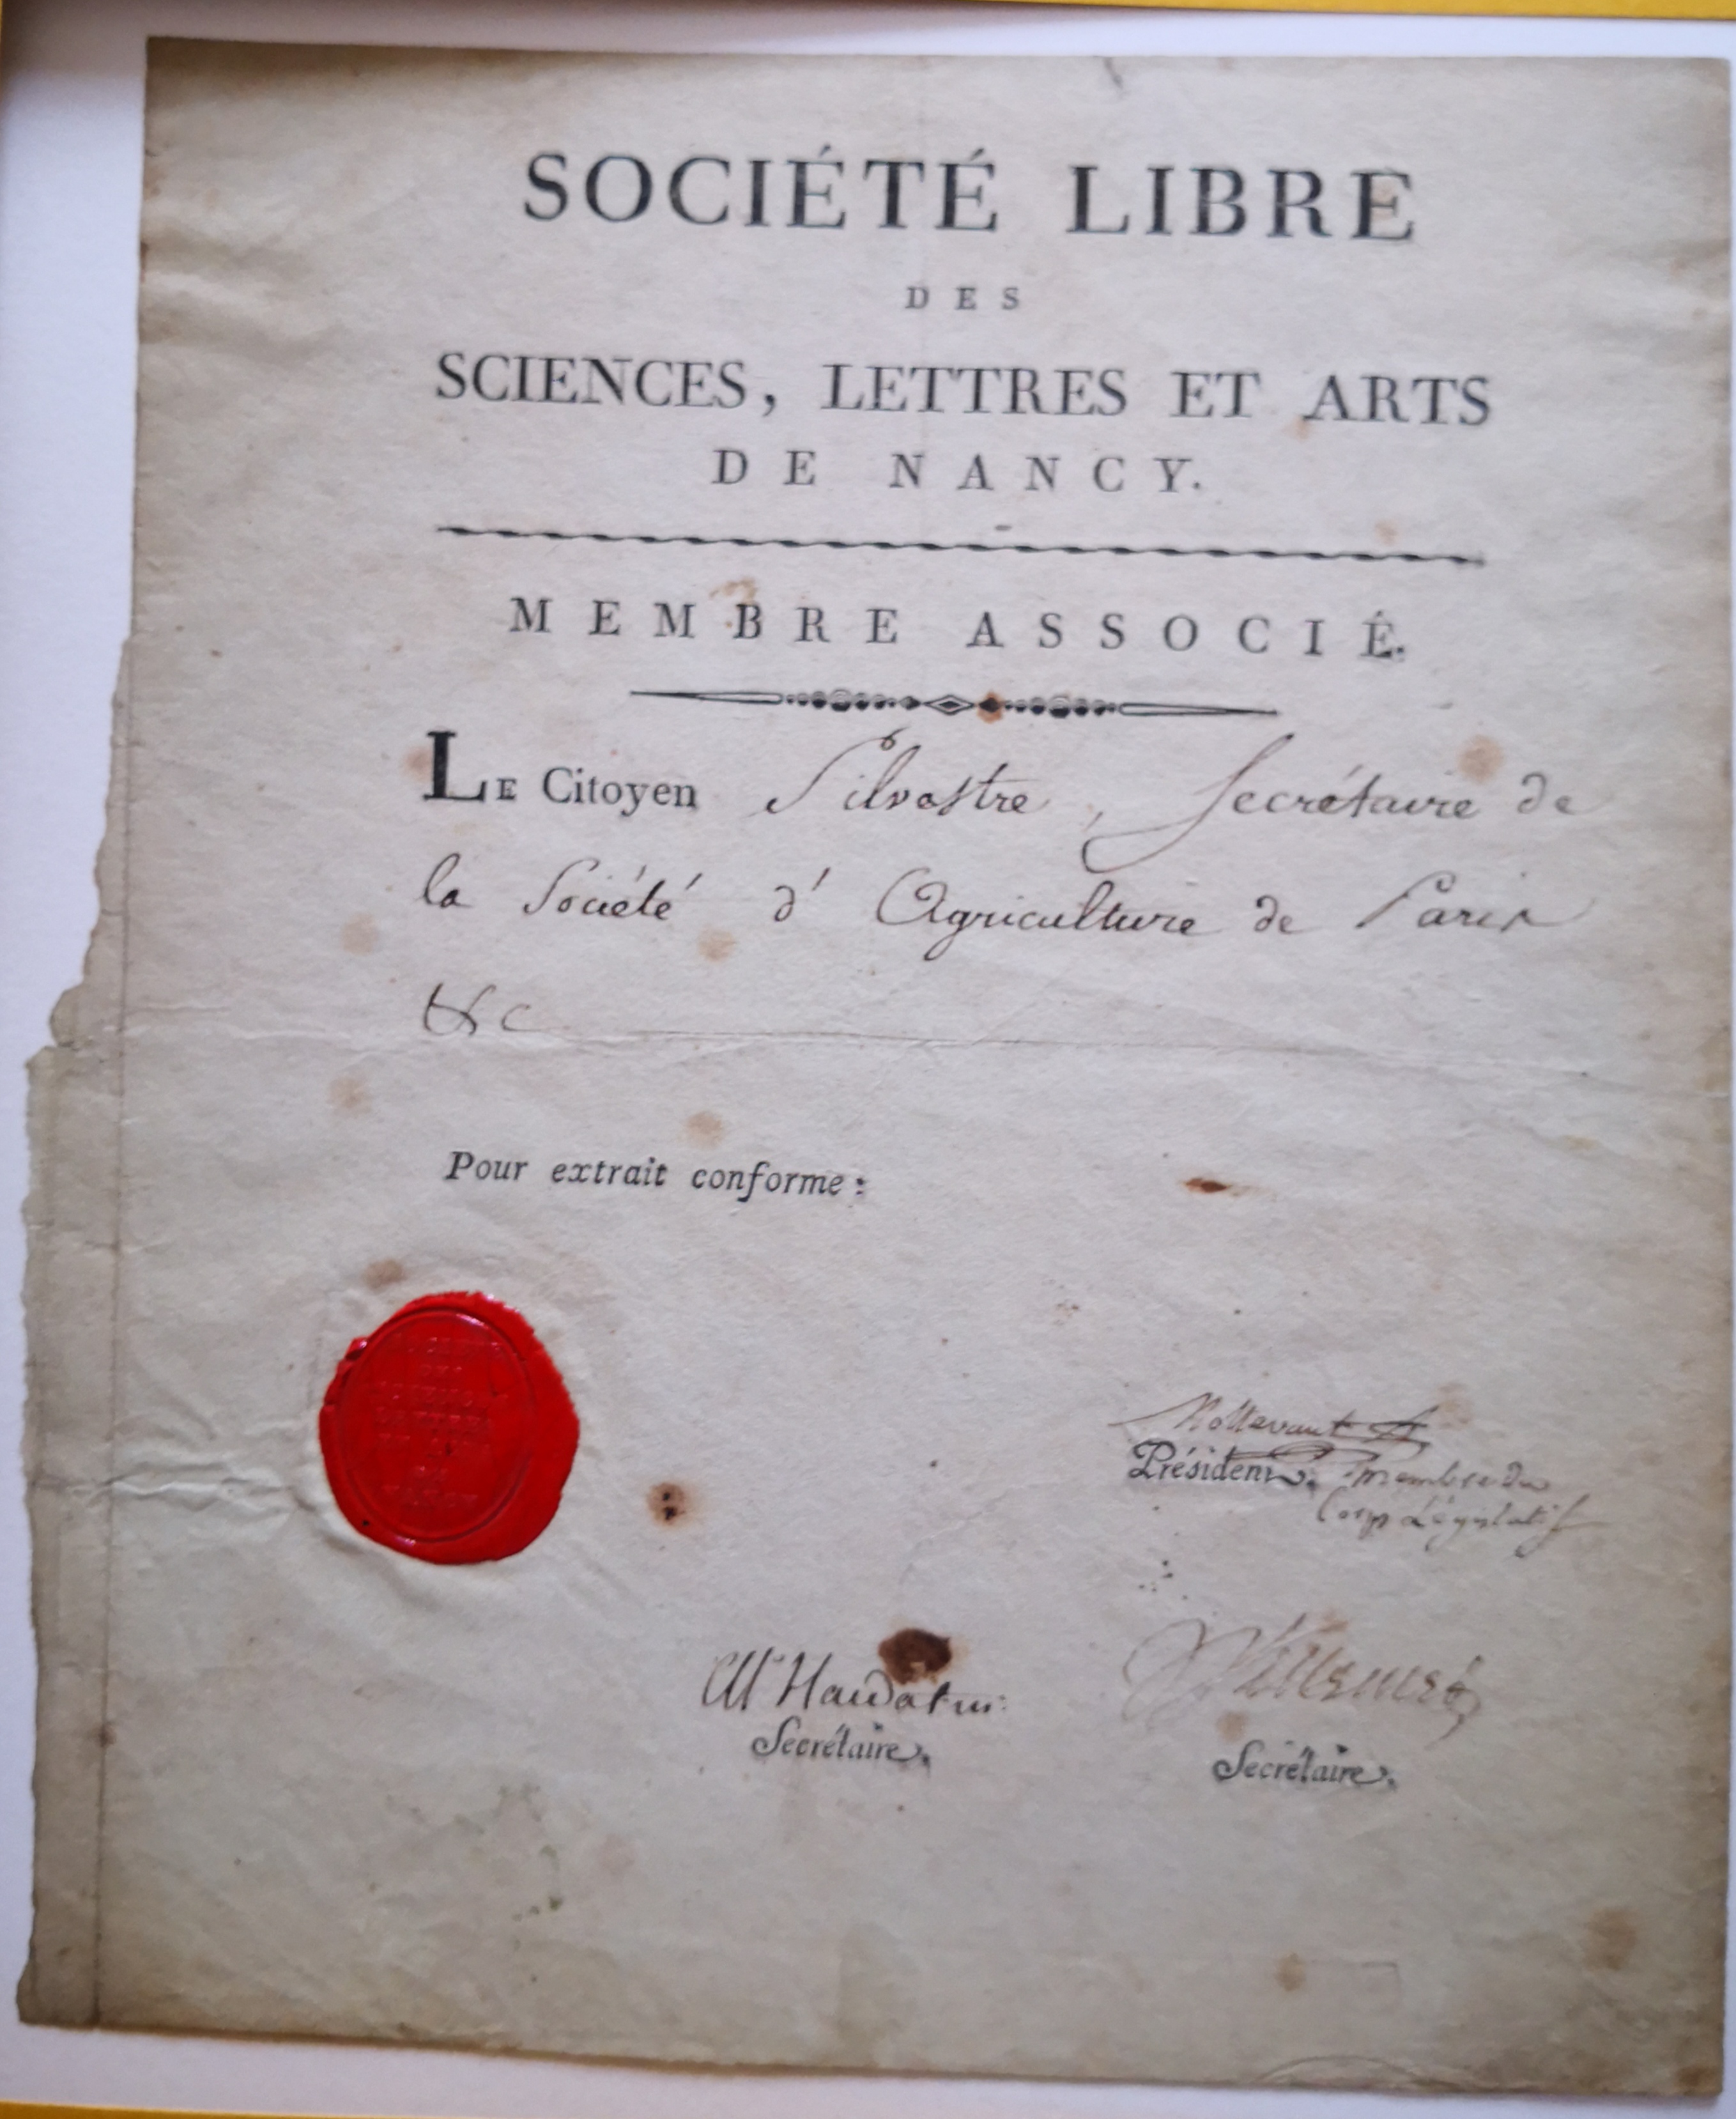  Lettre de membre associé de la Société Libre des Sciences, Lettres et Arts de Nancy  - Document 1